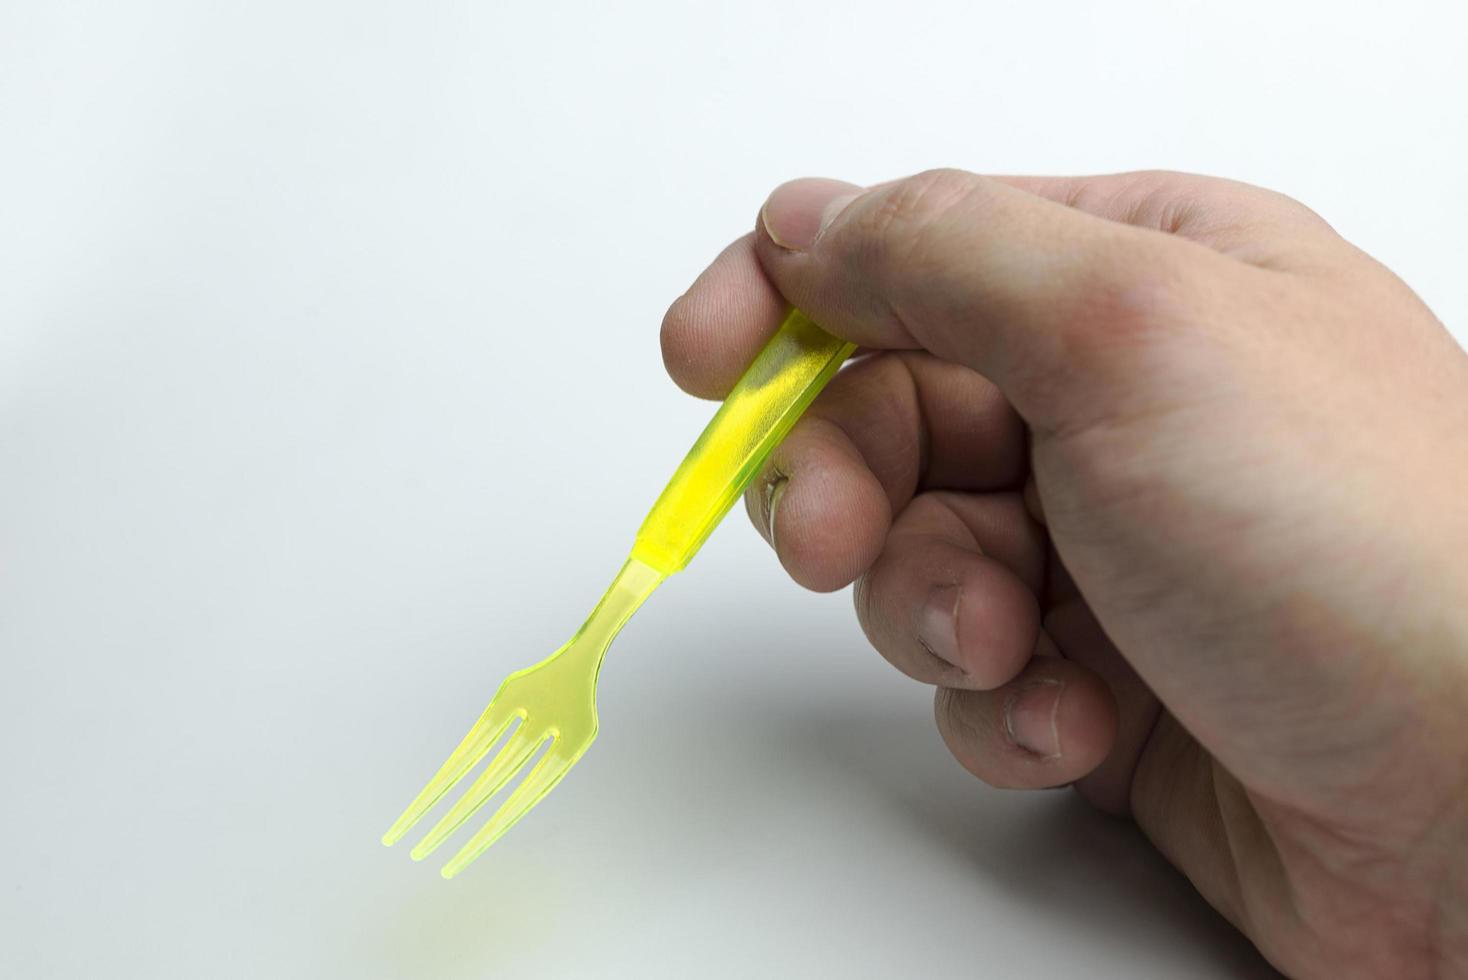 main tenant une fourchette en plastique. photo